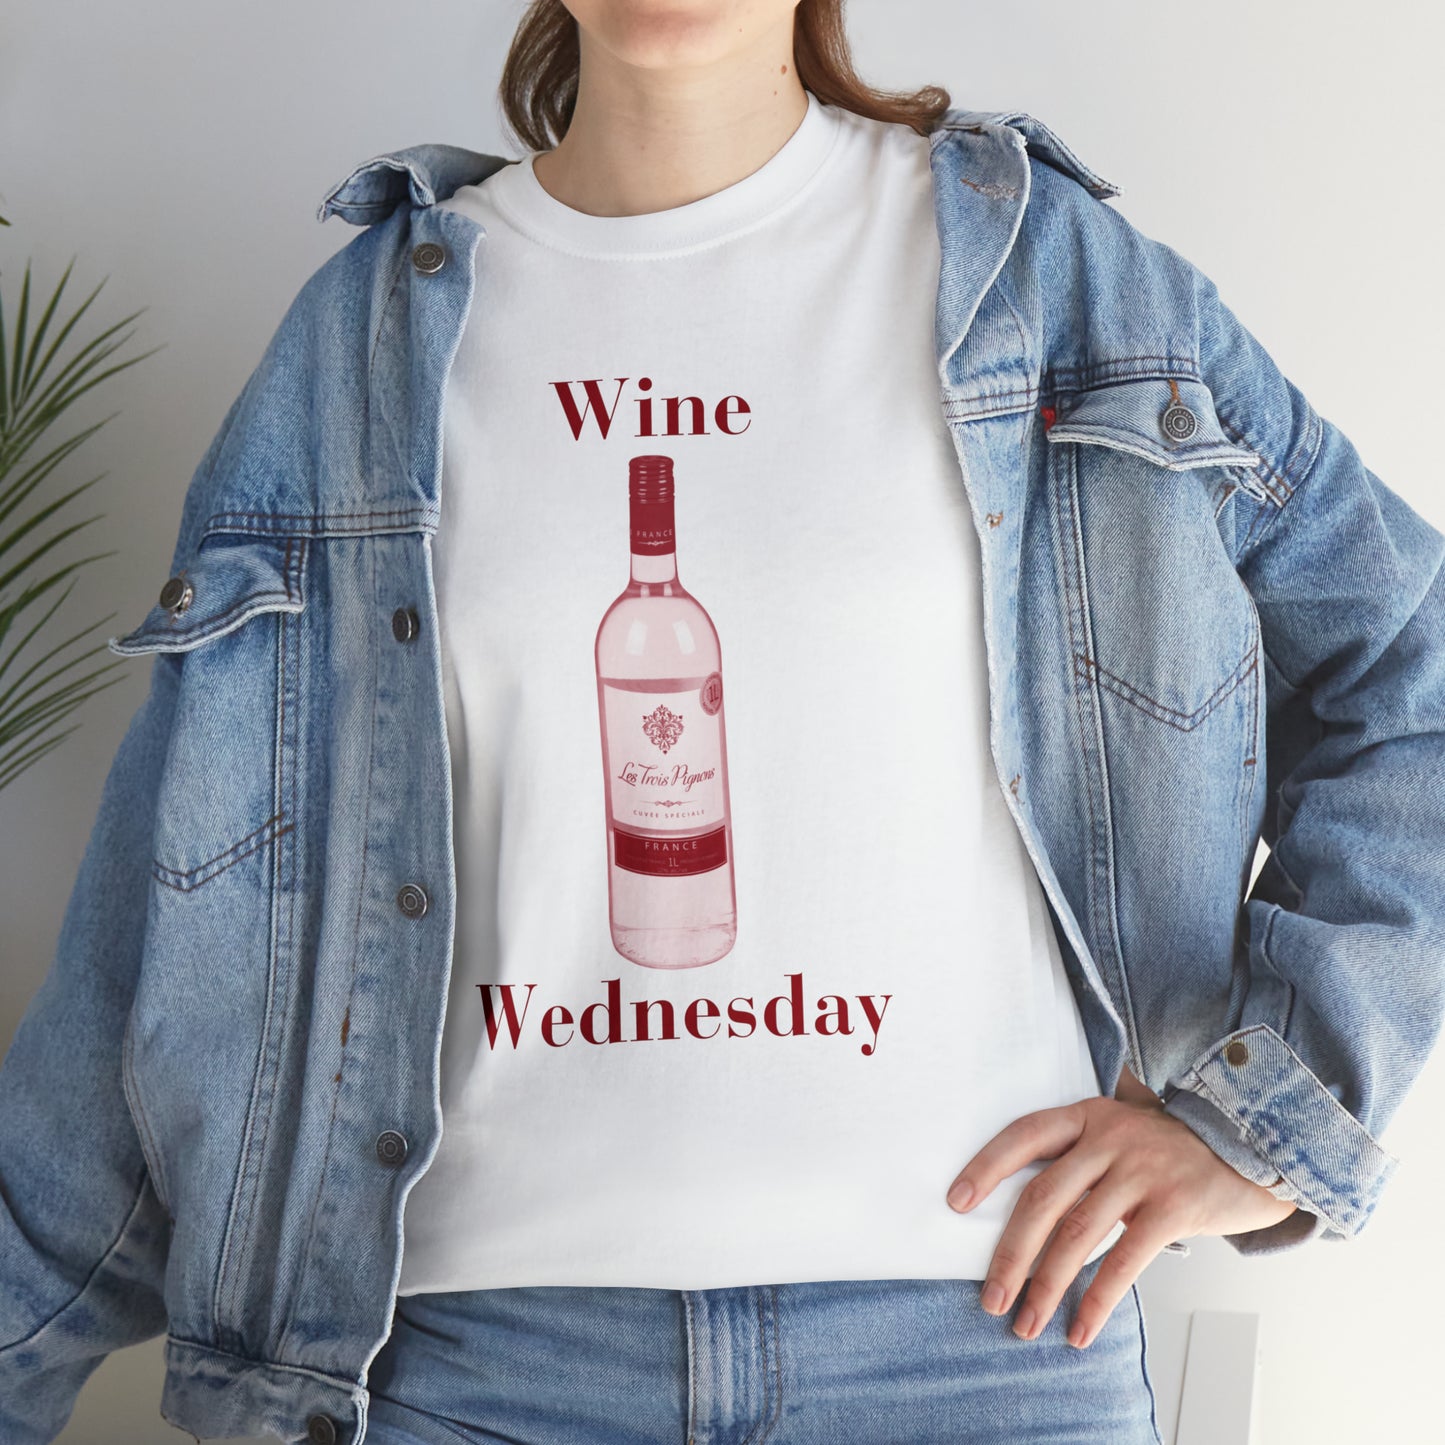 Wine Wednesday - Unisex Heavy Cotton Tee